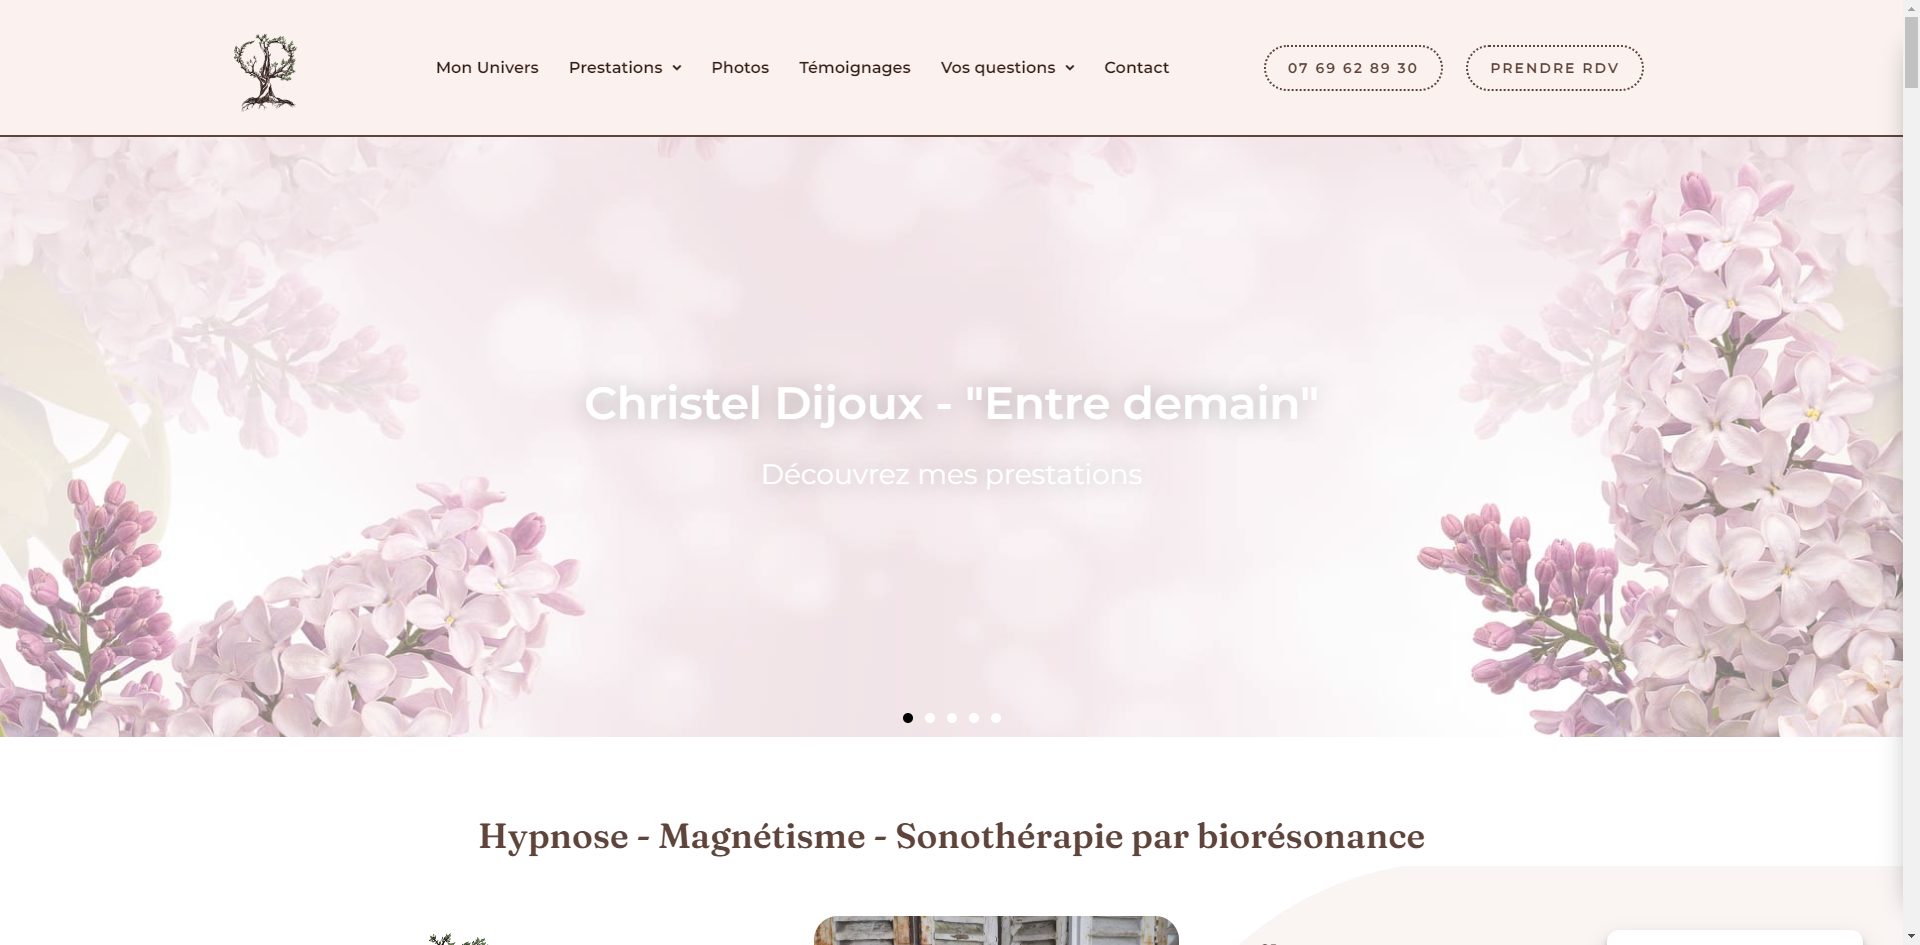 Page d'accueil du site internet one page réalisé pour Christel Dijoux.